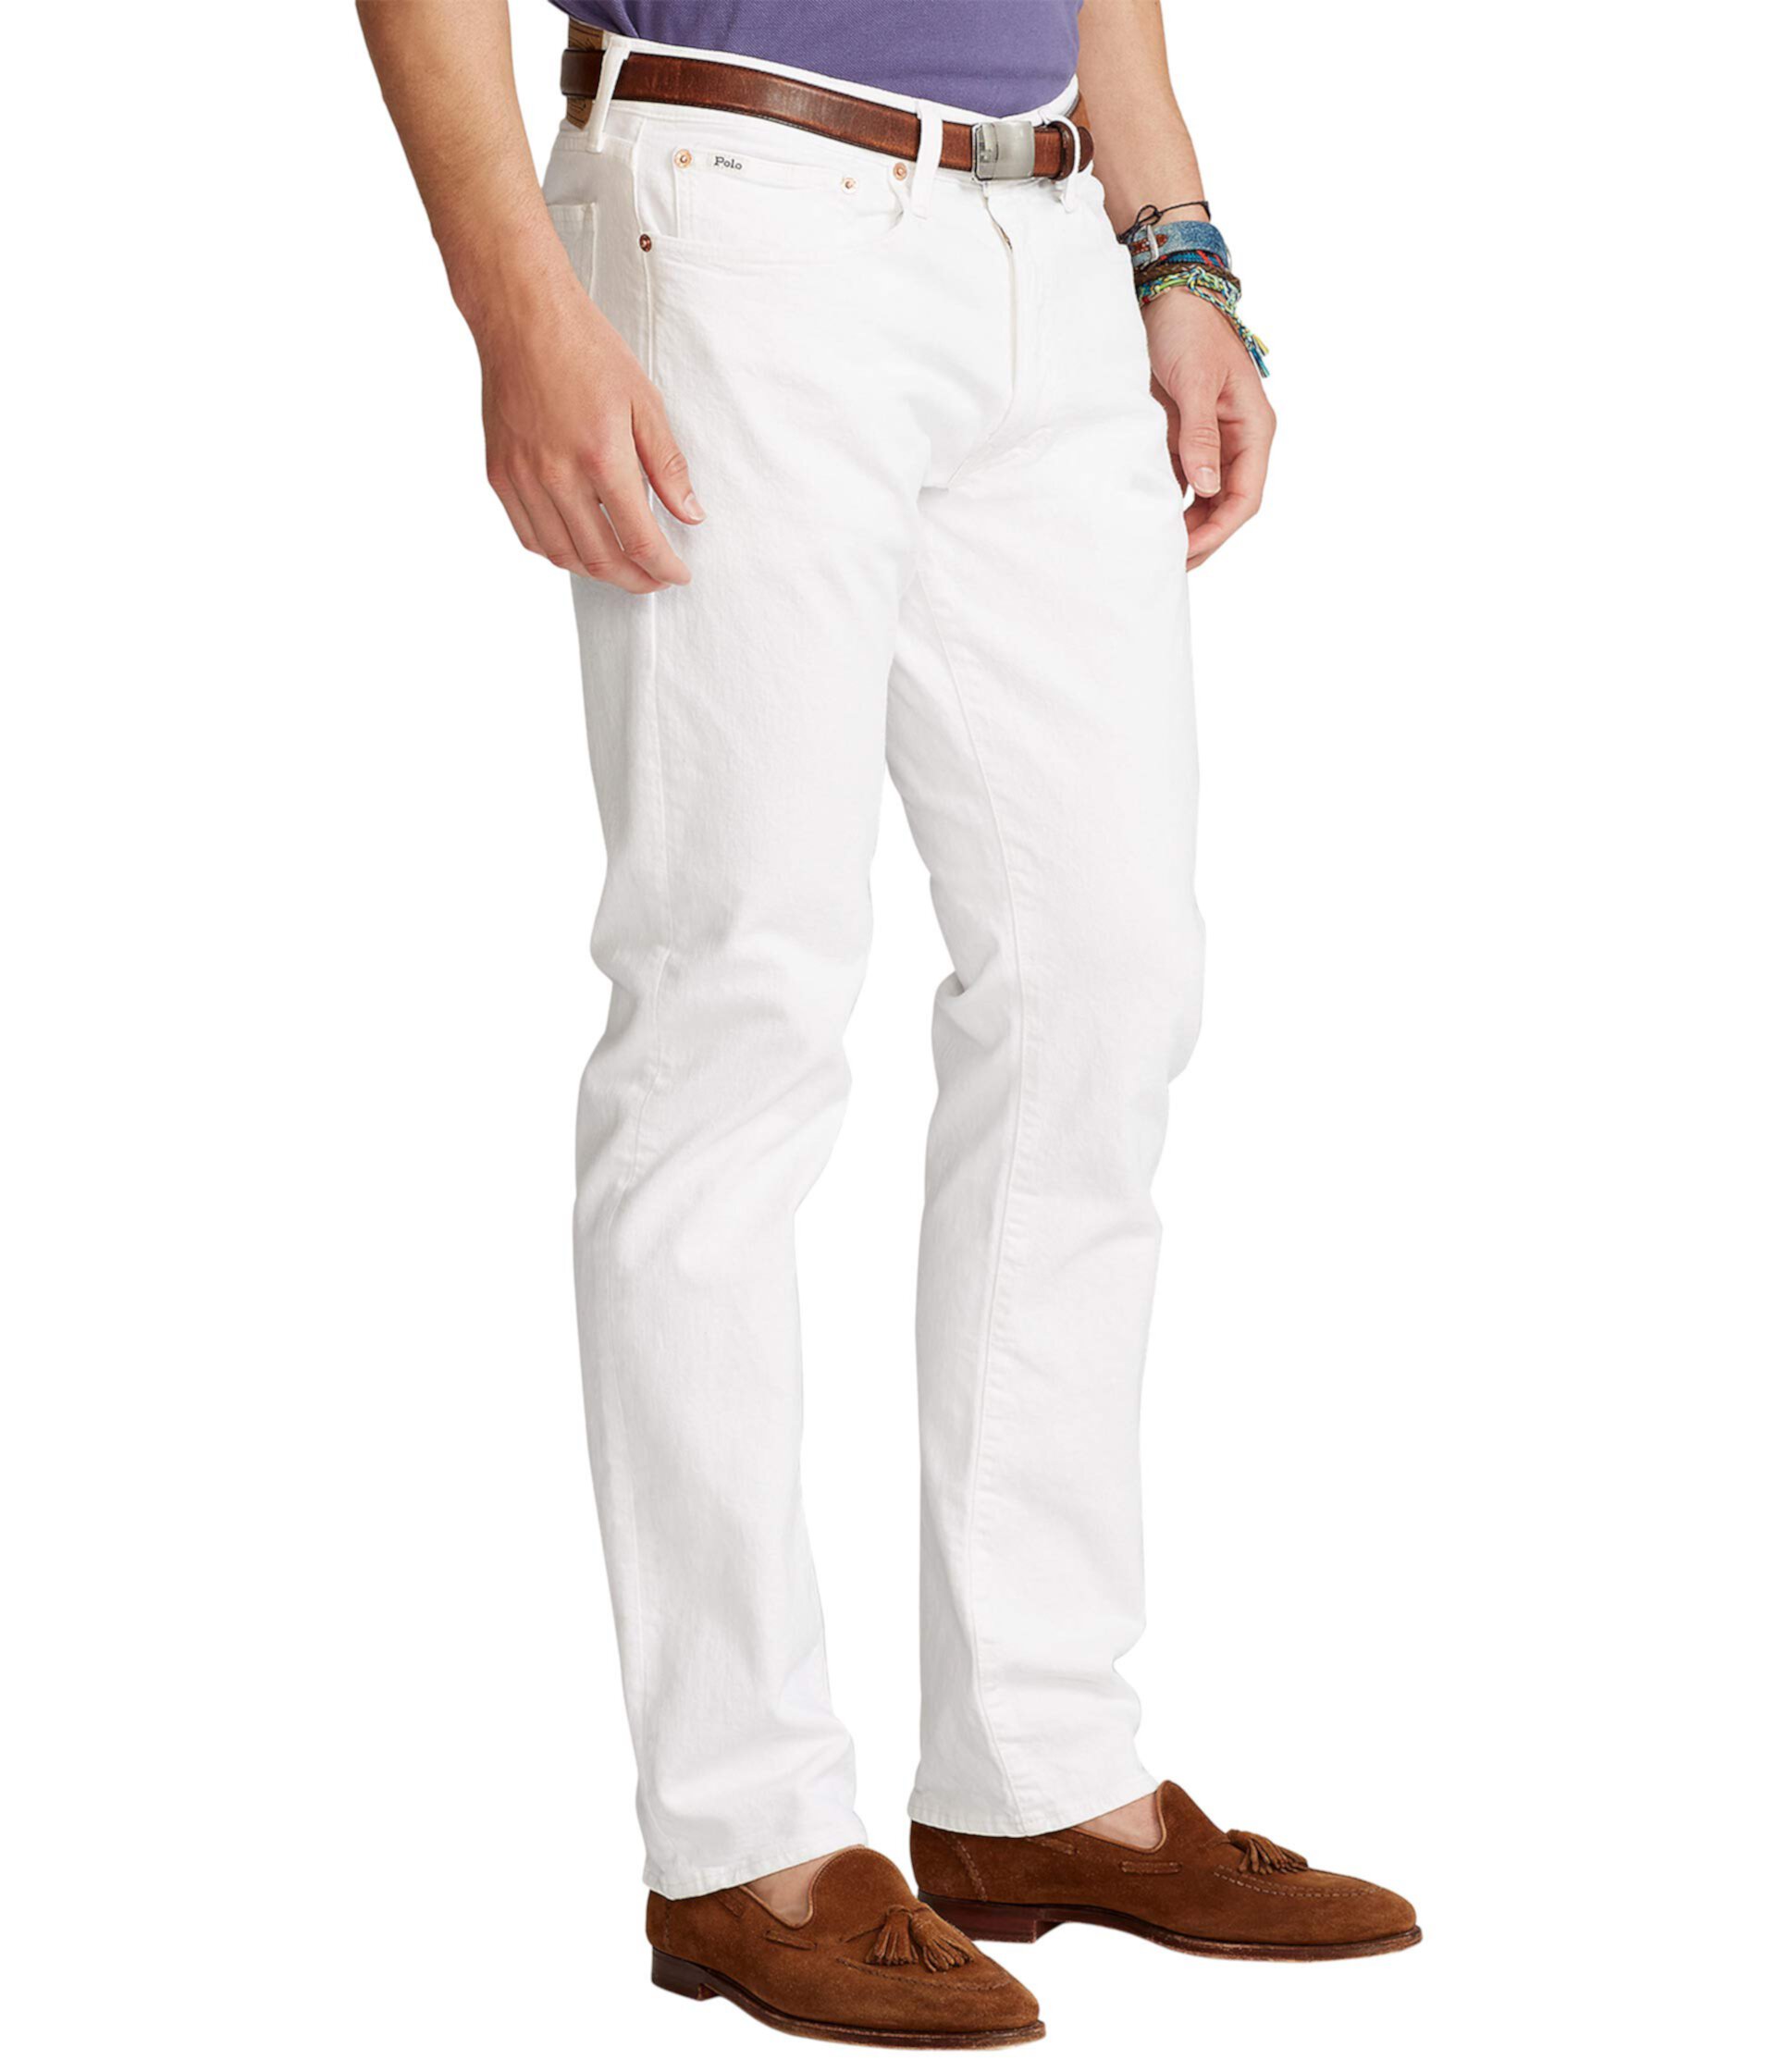 Узкие прямые джинсы Varick от Polo Ralph Lauren для мужчин Polo Ralph Lauren